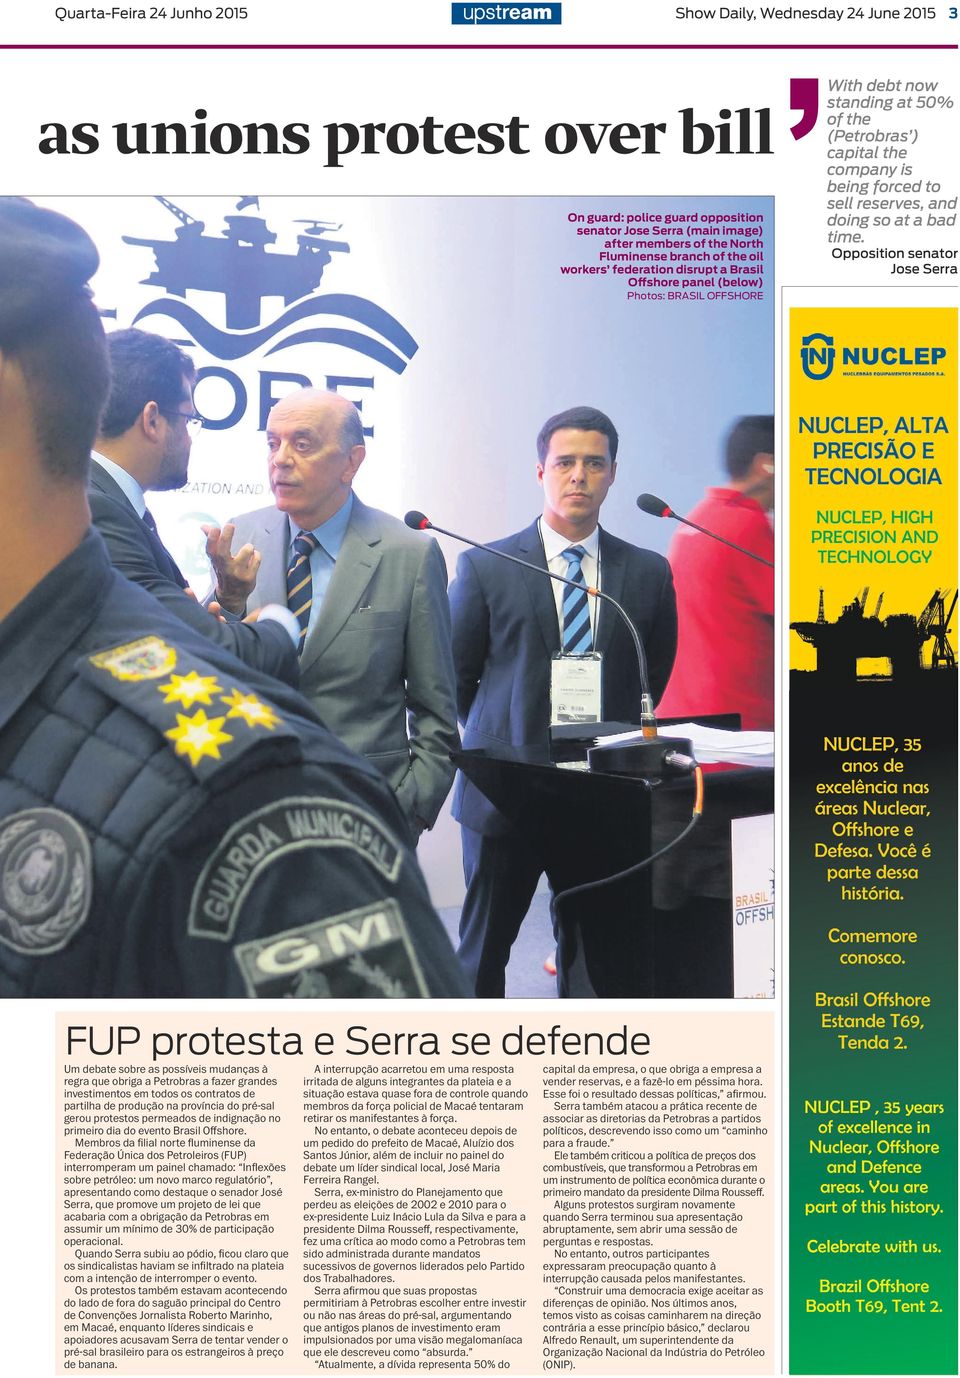 Petrobras a fazer grandes investimentos em todos os contratos de partilha de produção na província do pré-sal gerou protestos permeados de indignação no primeiro dia do evento Brasil Offshore.